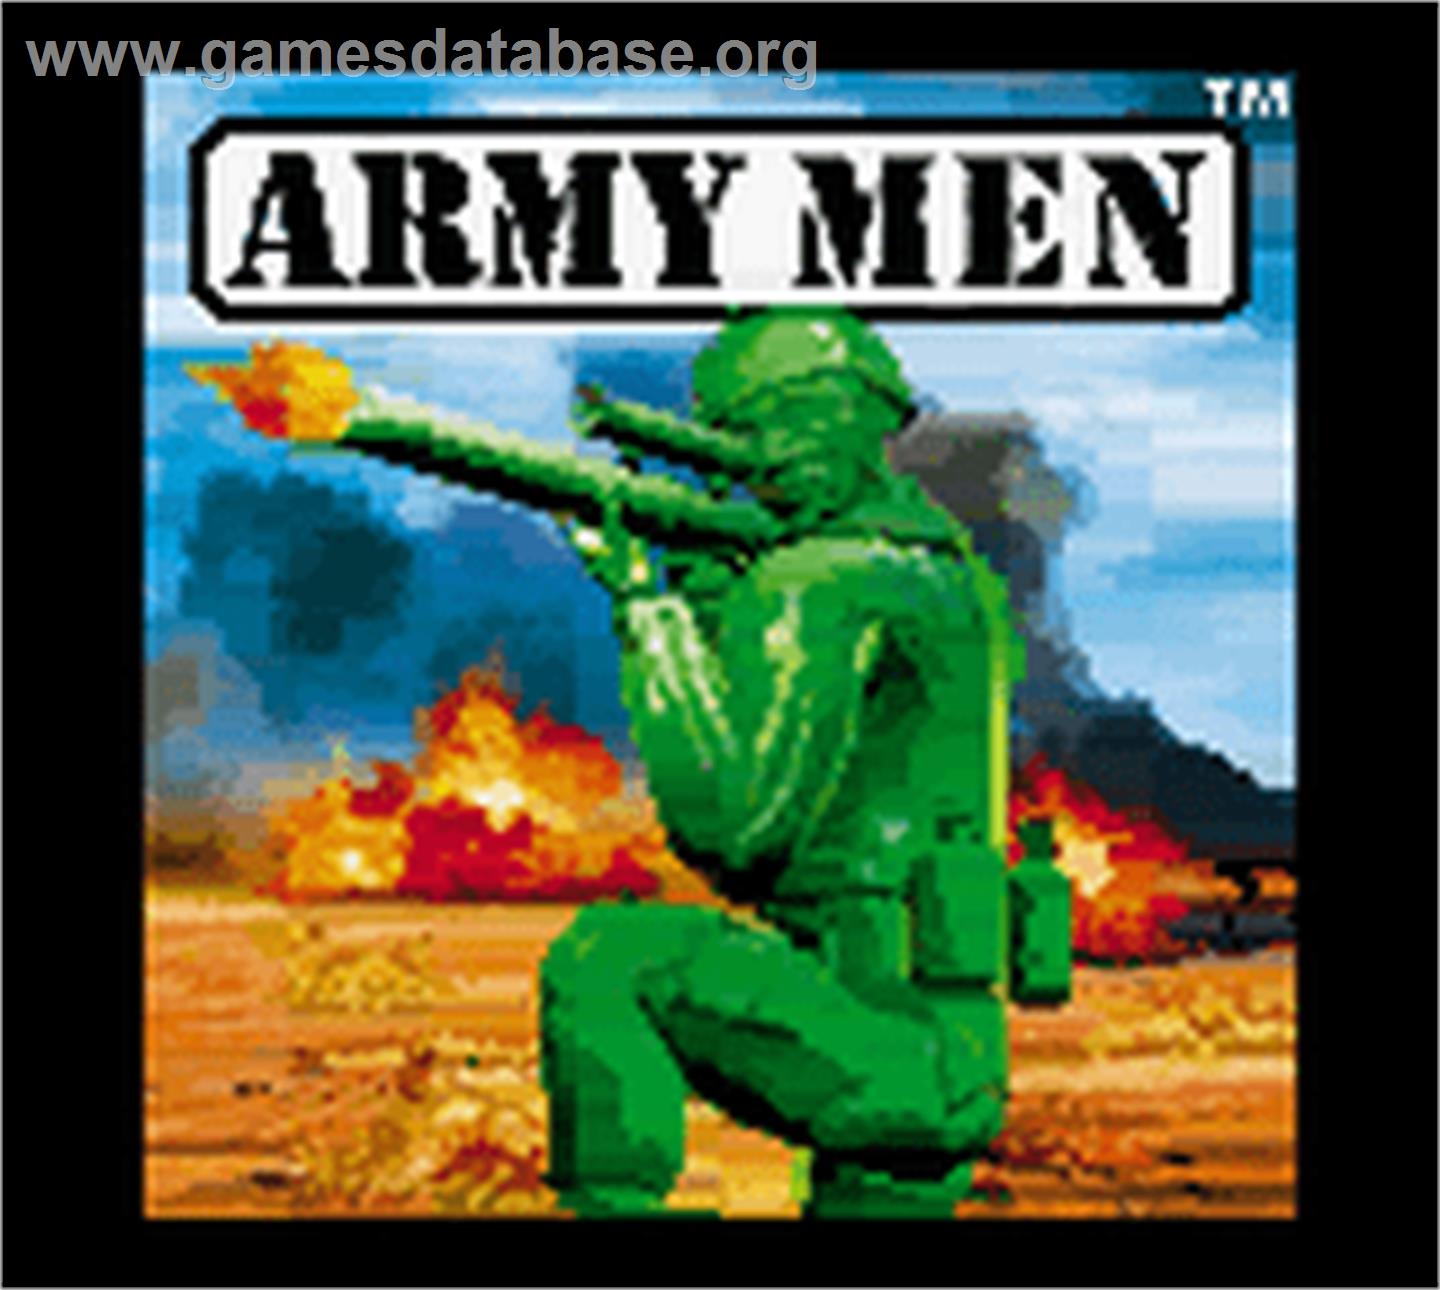 Army Men - Nintendo Game Boy Color - Artwork - Title Screen